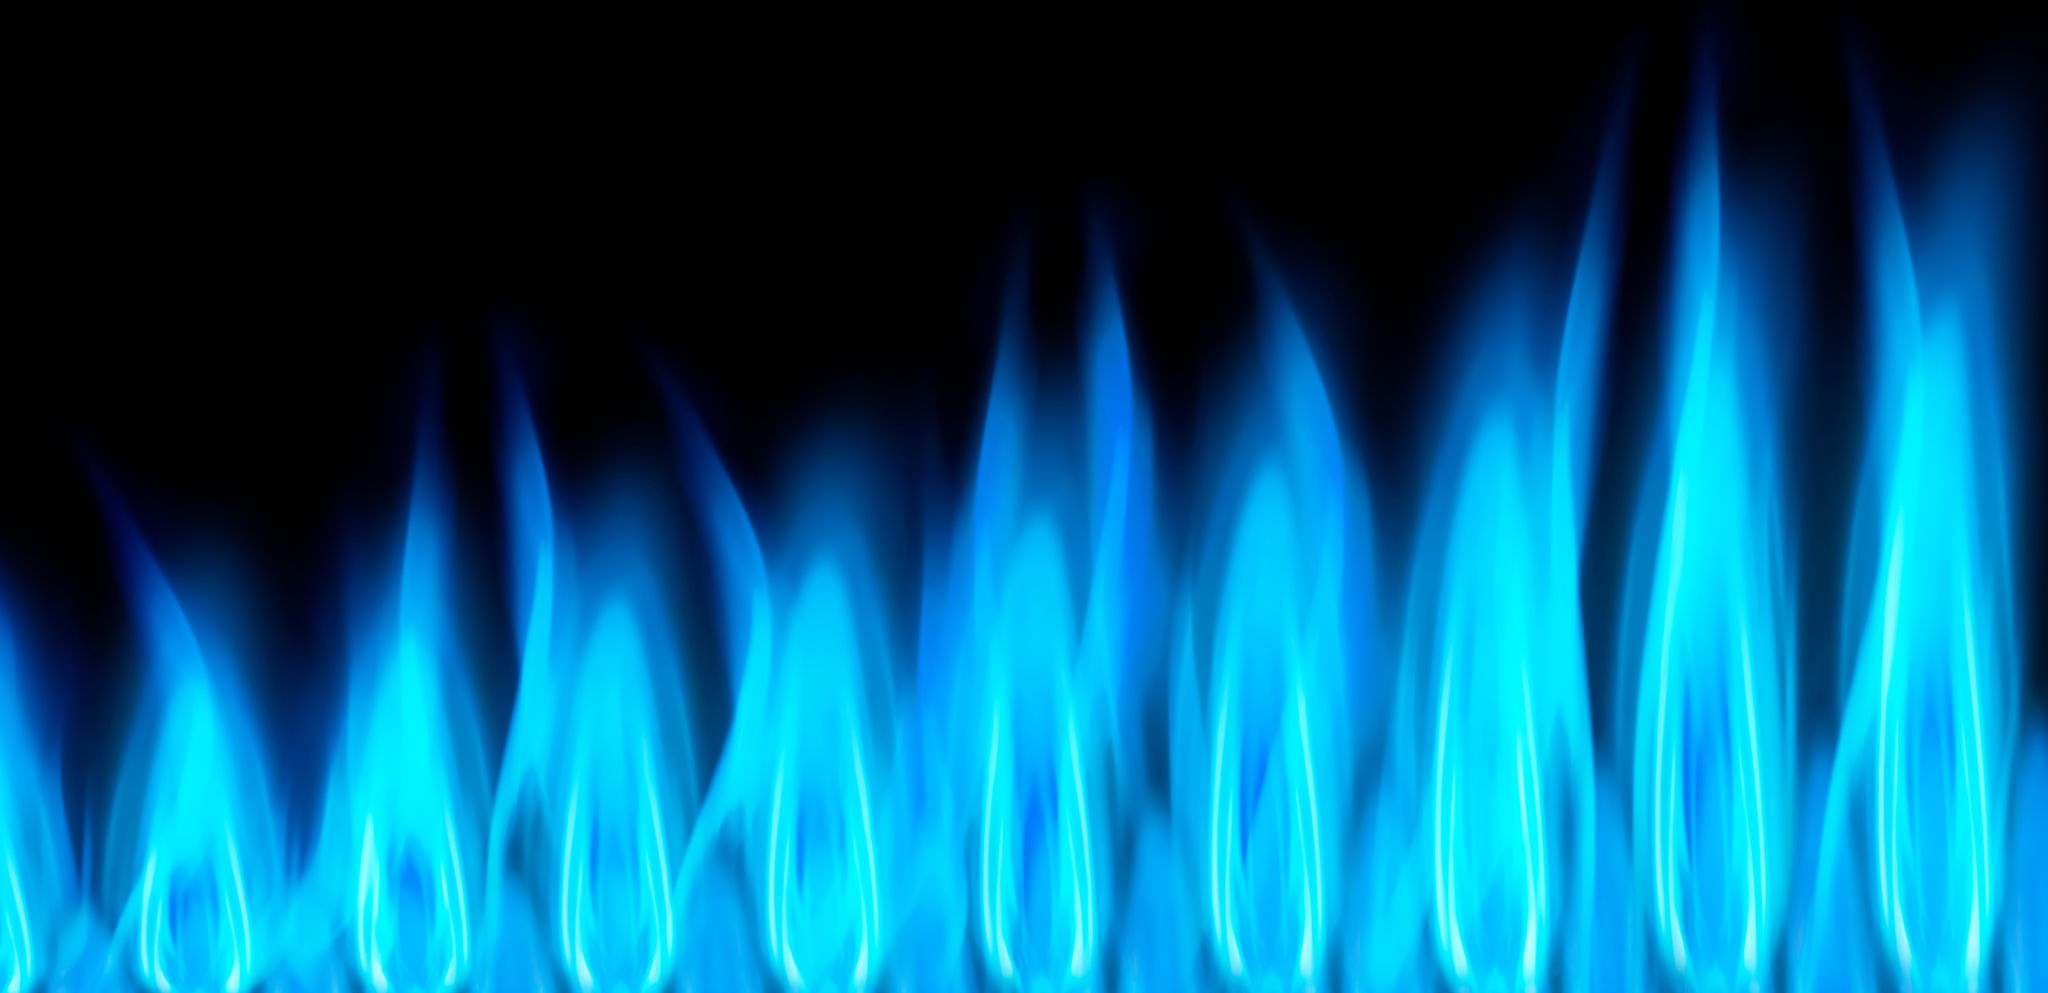 Gás encanado deve encarecer nos próximos meses. Fonte: Adobe Stock.